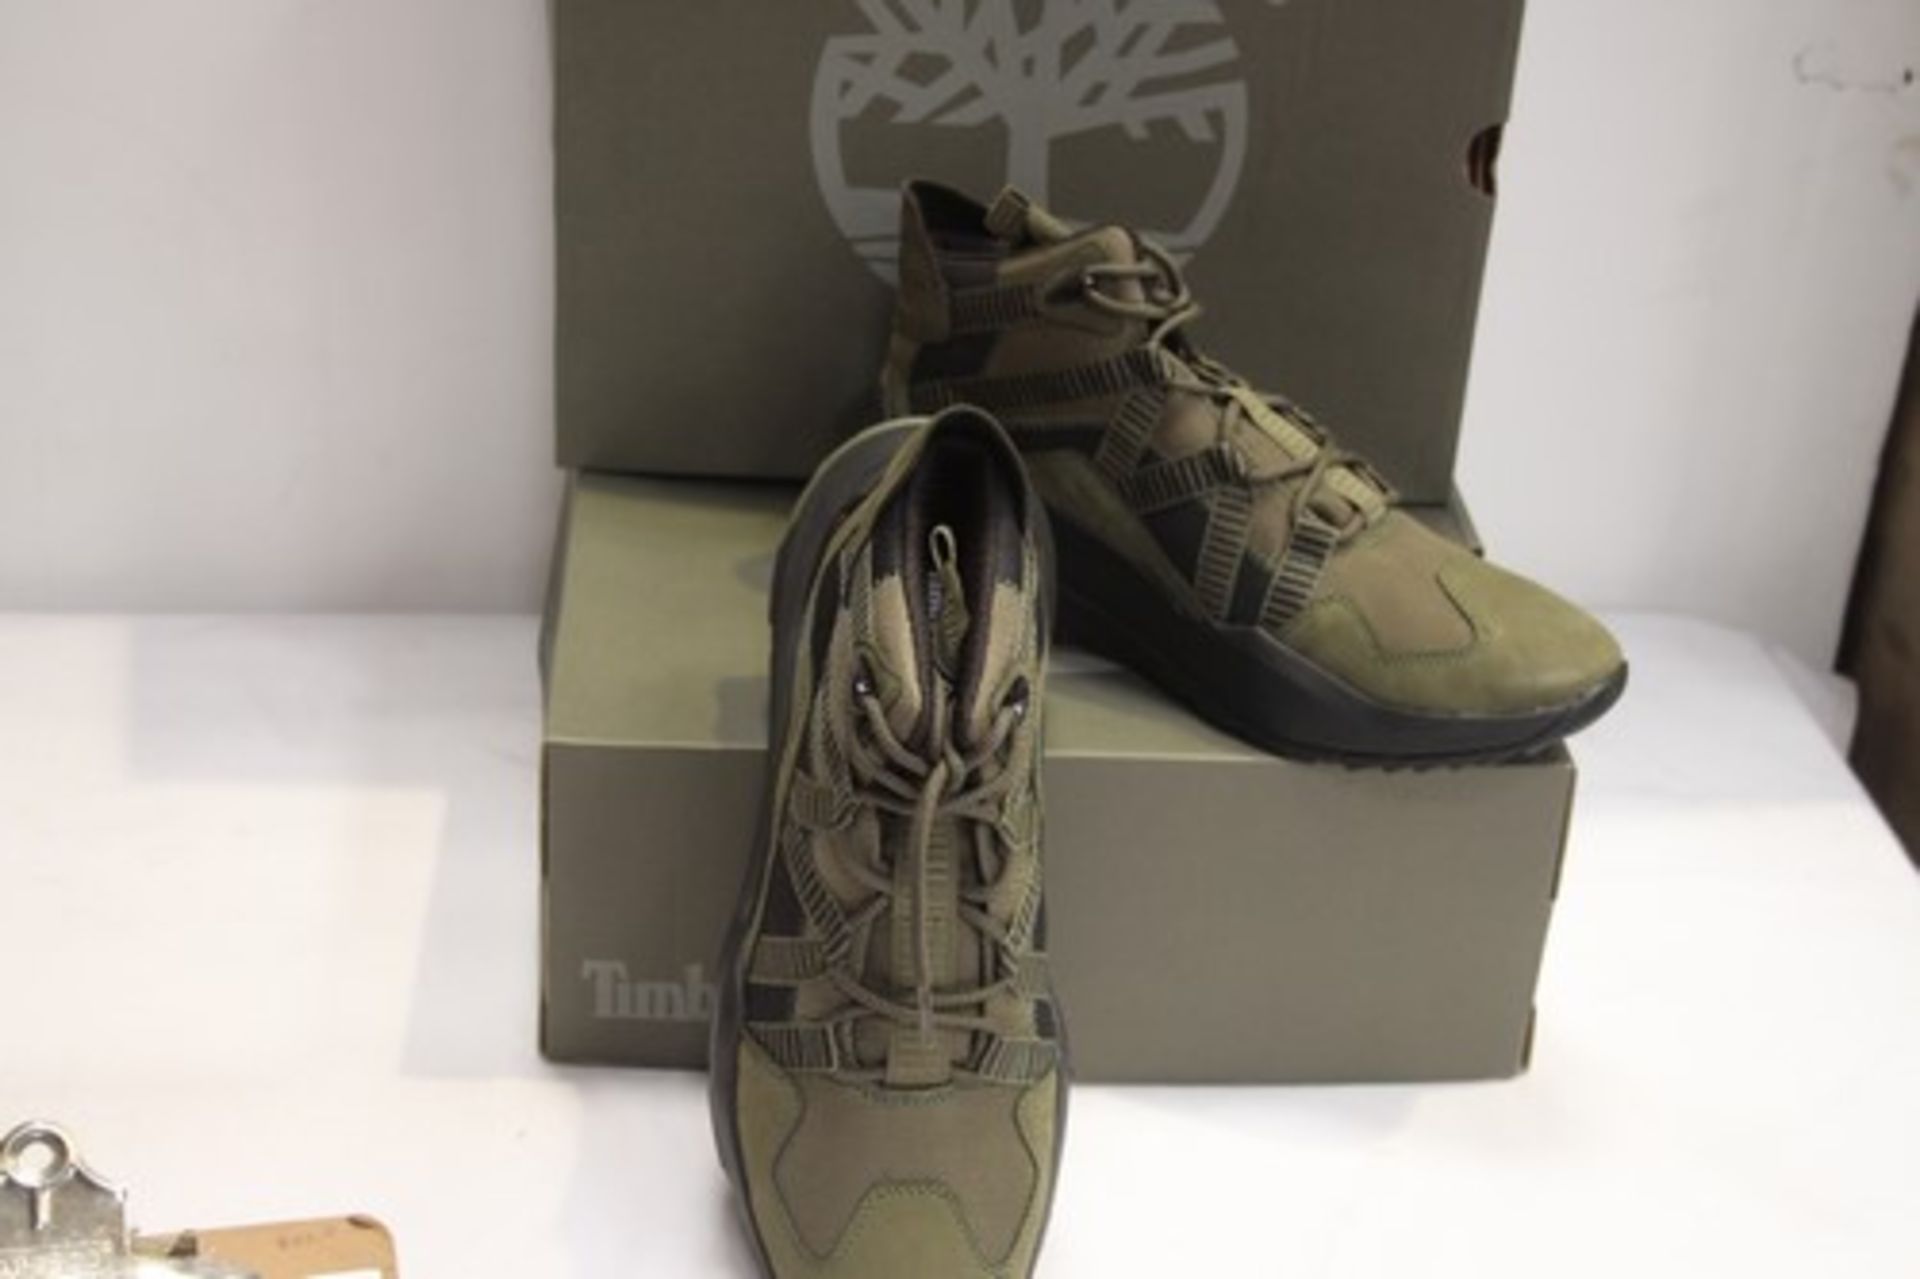 2 x pairs of Timberland dark green men's Madbury mid hiker boots, size UK 10.5 - New in tatty box (